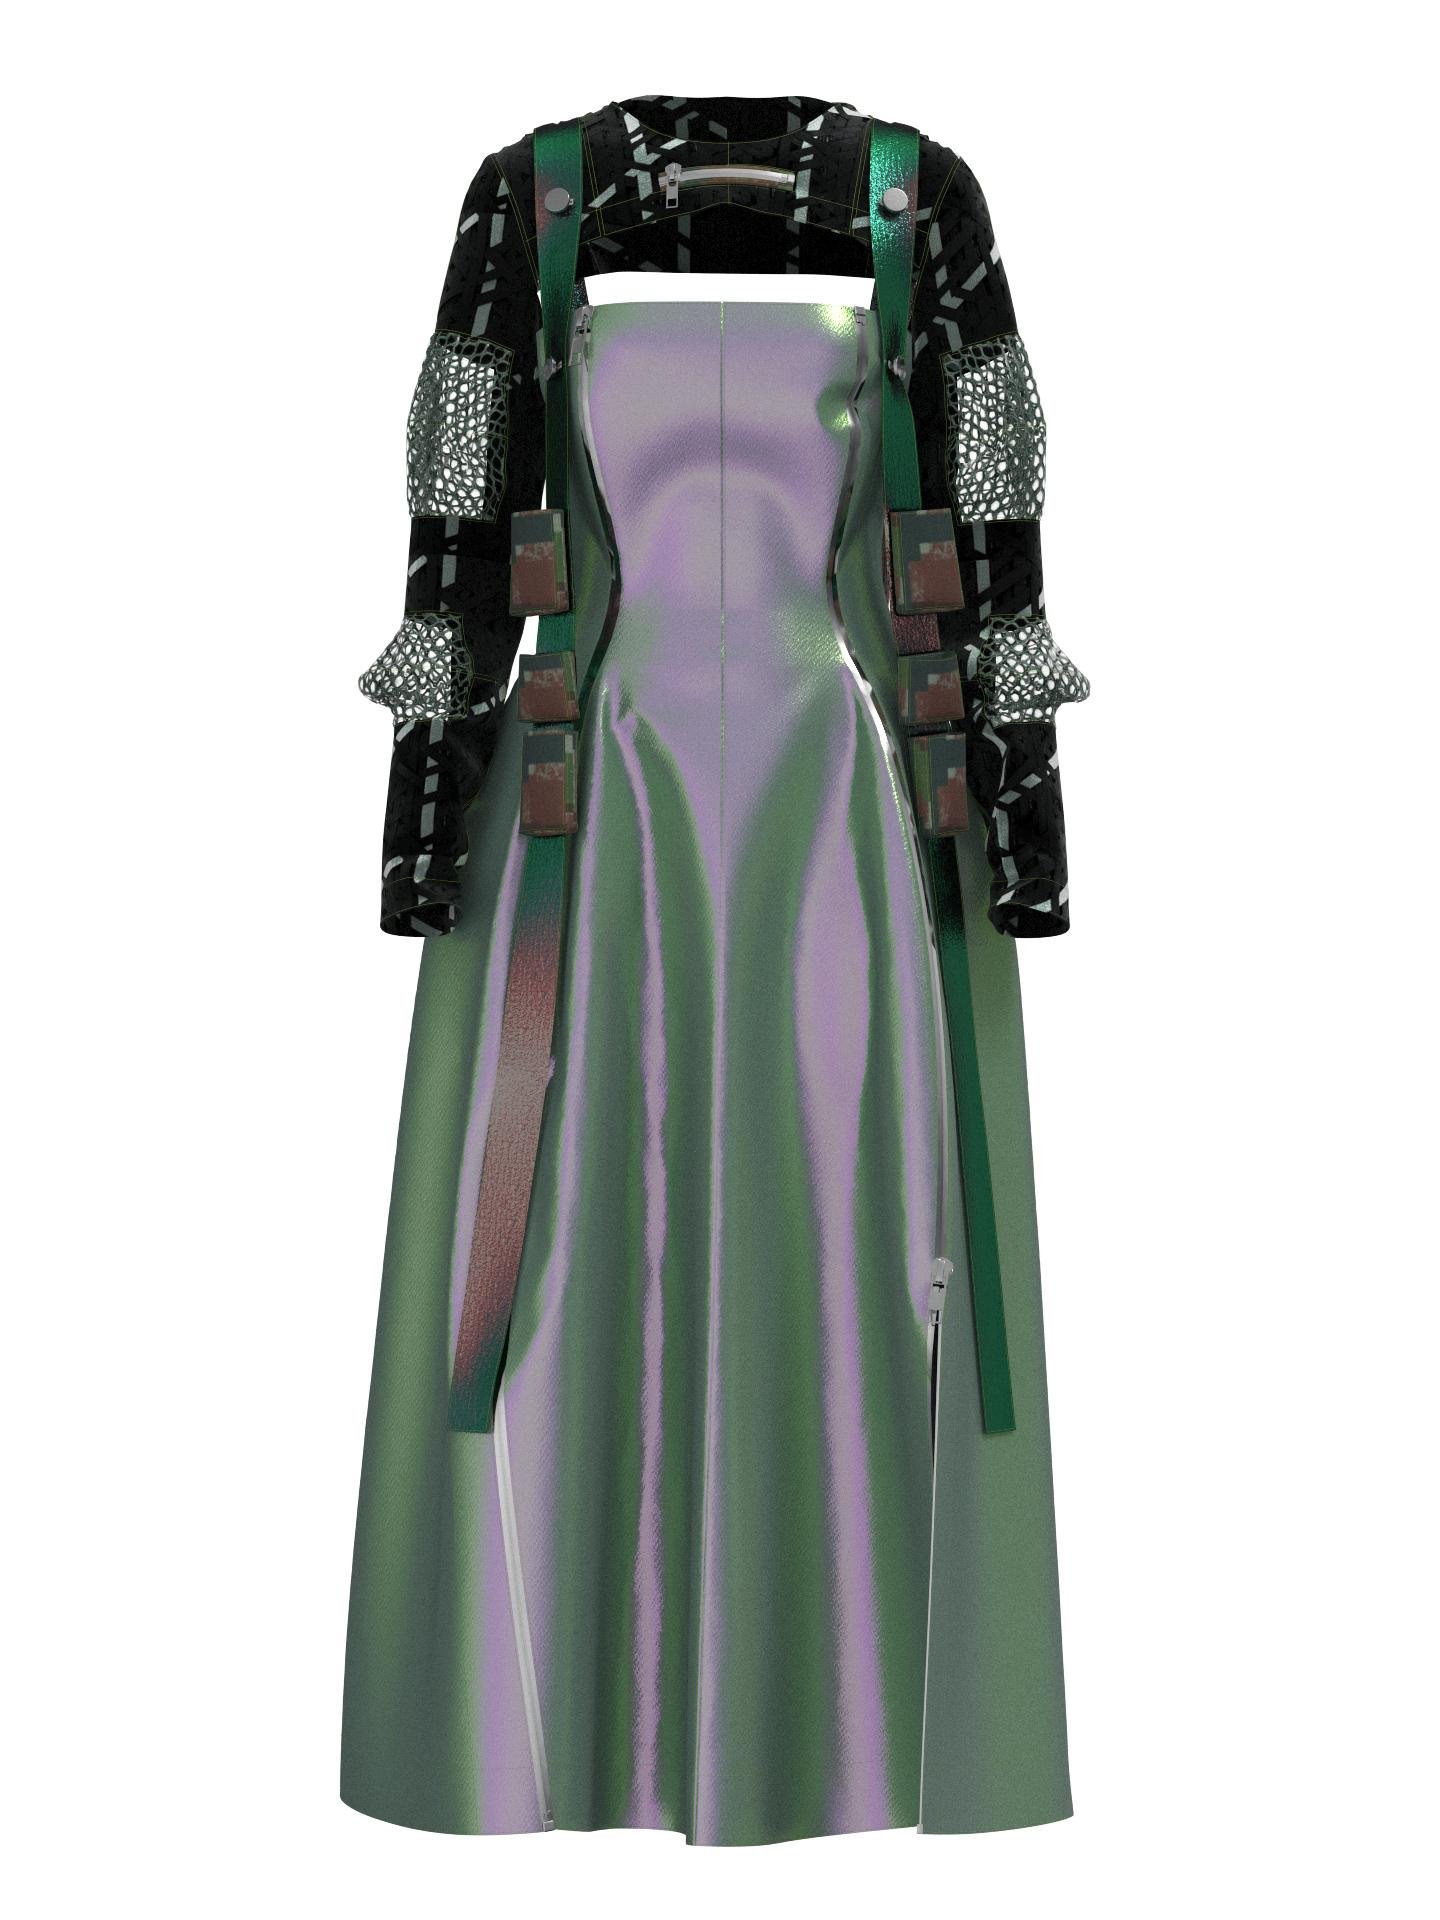 Polarized maxi dress by HAUTICO